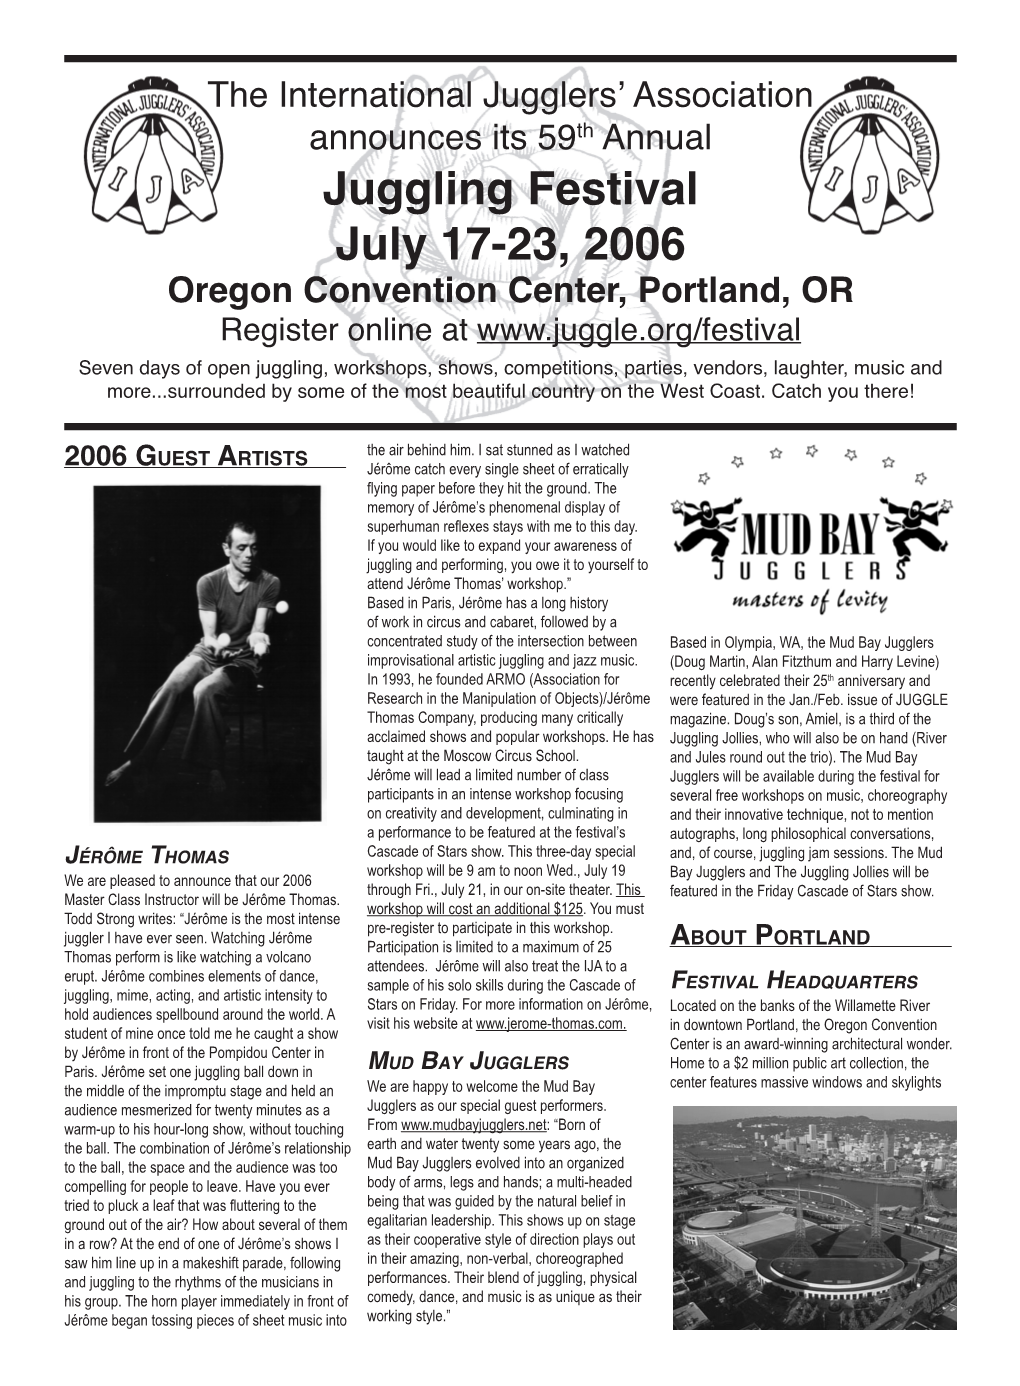 Juggling Festival July 17-23, 2006